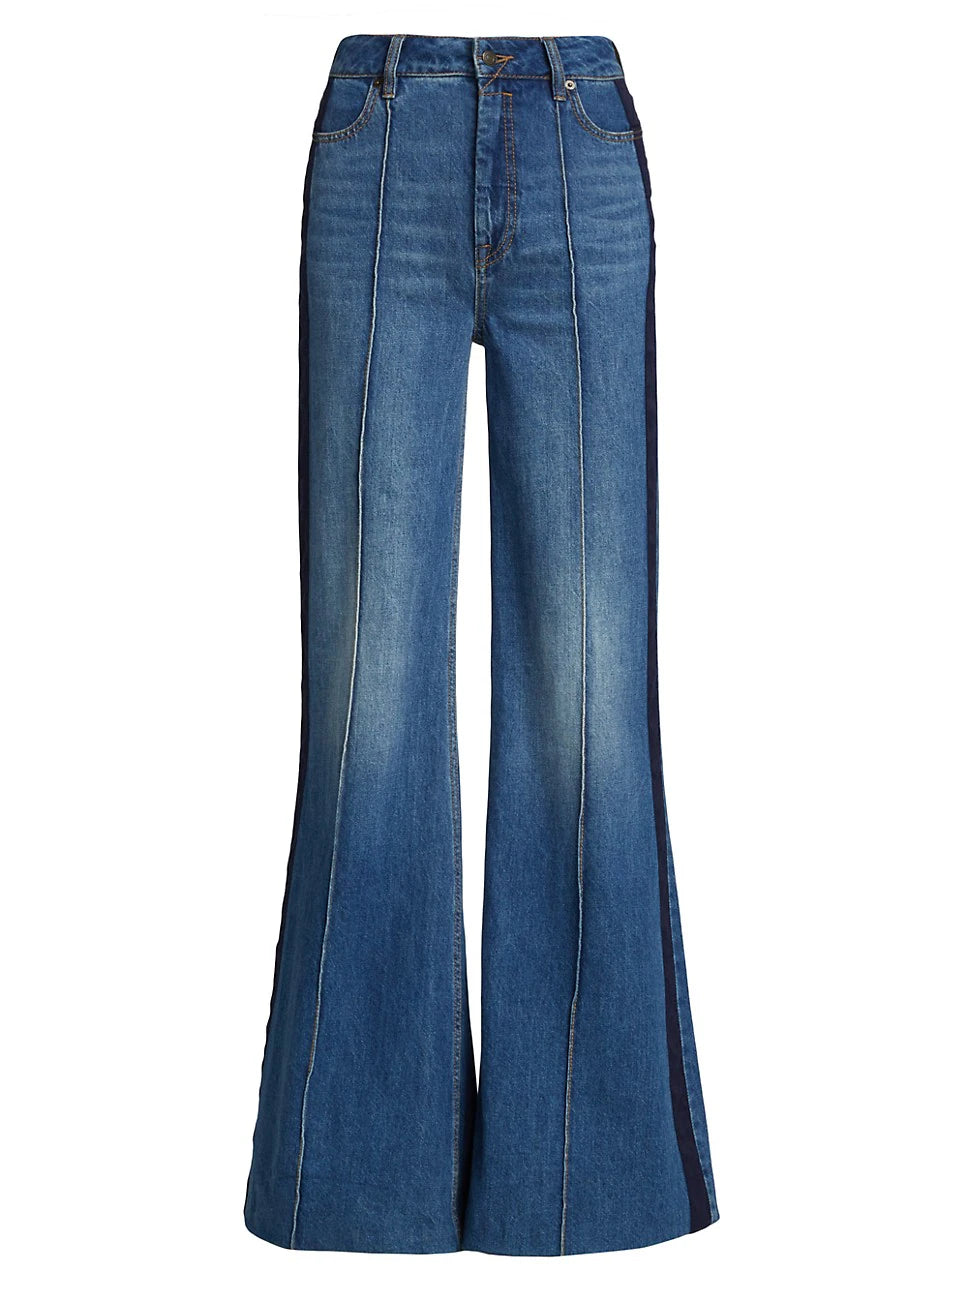 High Rise Super Flare Denim Jeans - 27